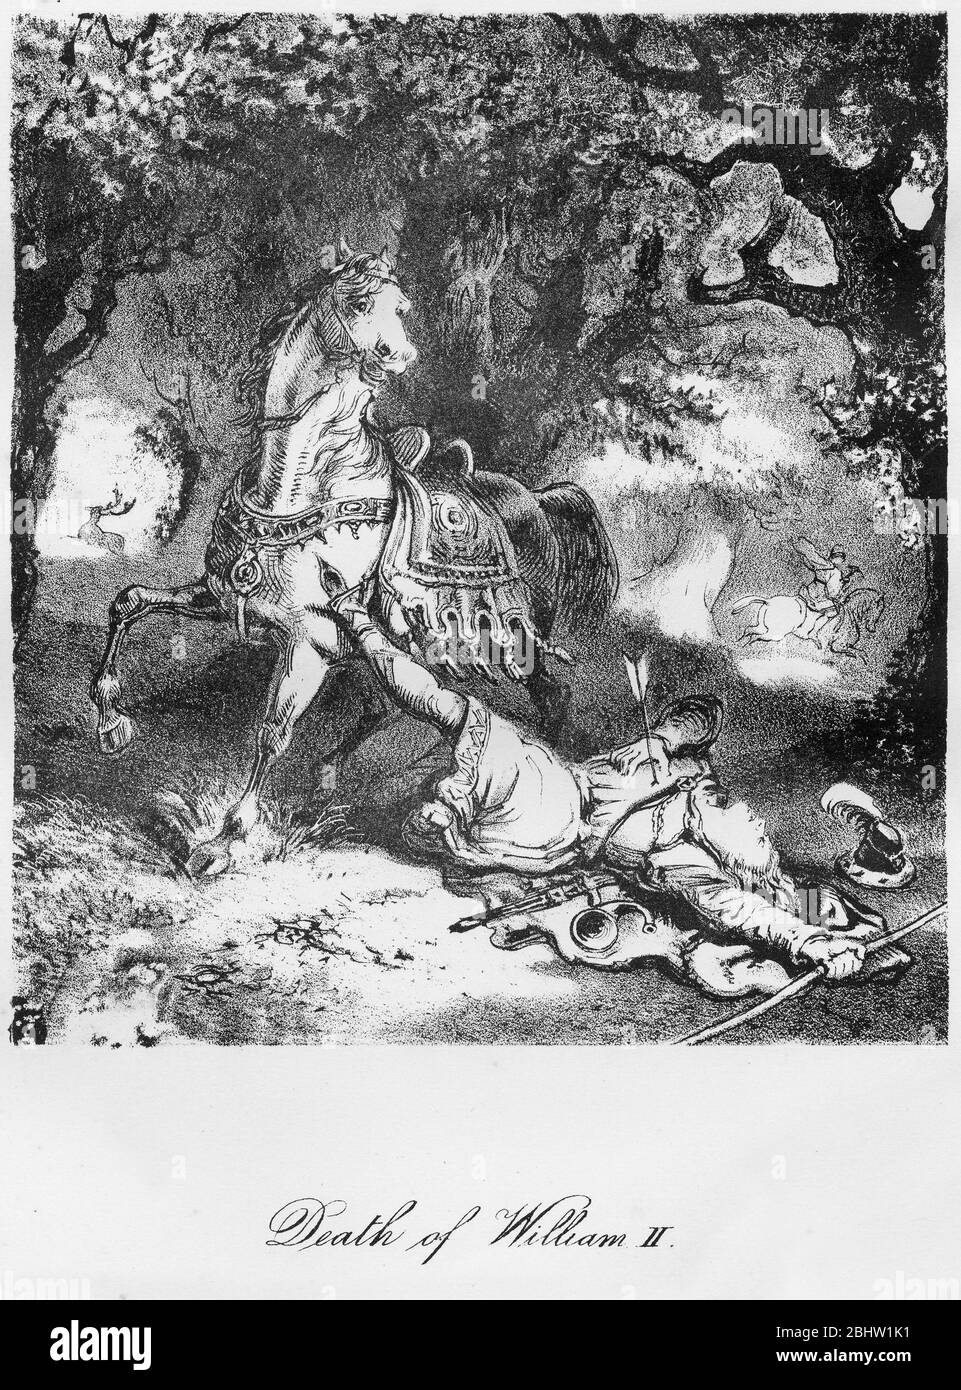 Gravur von König Wilhelm II von England (c. 1056-1100), der bei der Jagd durch einen Pfeil getroffen wurde. Das Bild impliziert, dass der Tod nicht zufällig war. Stockfoto